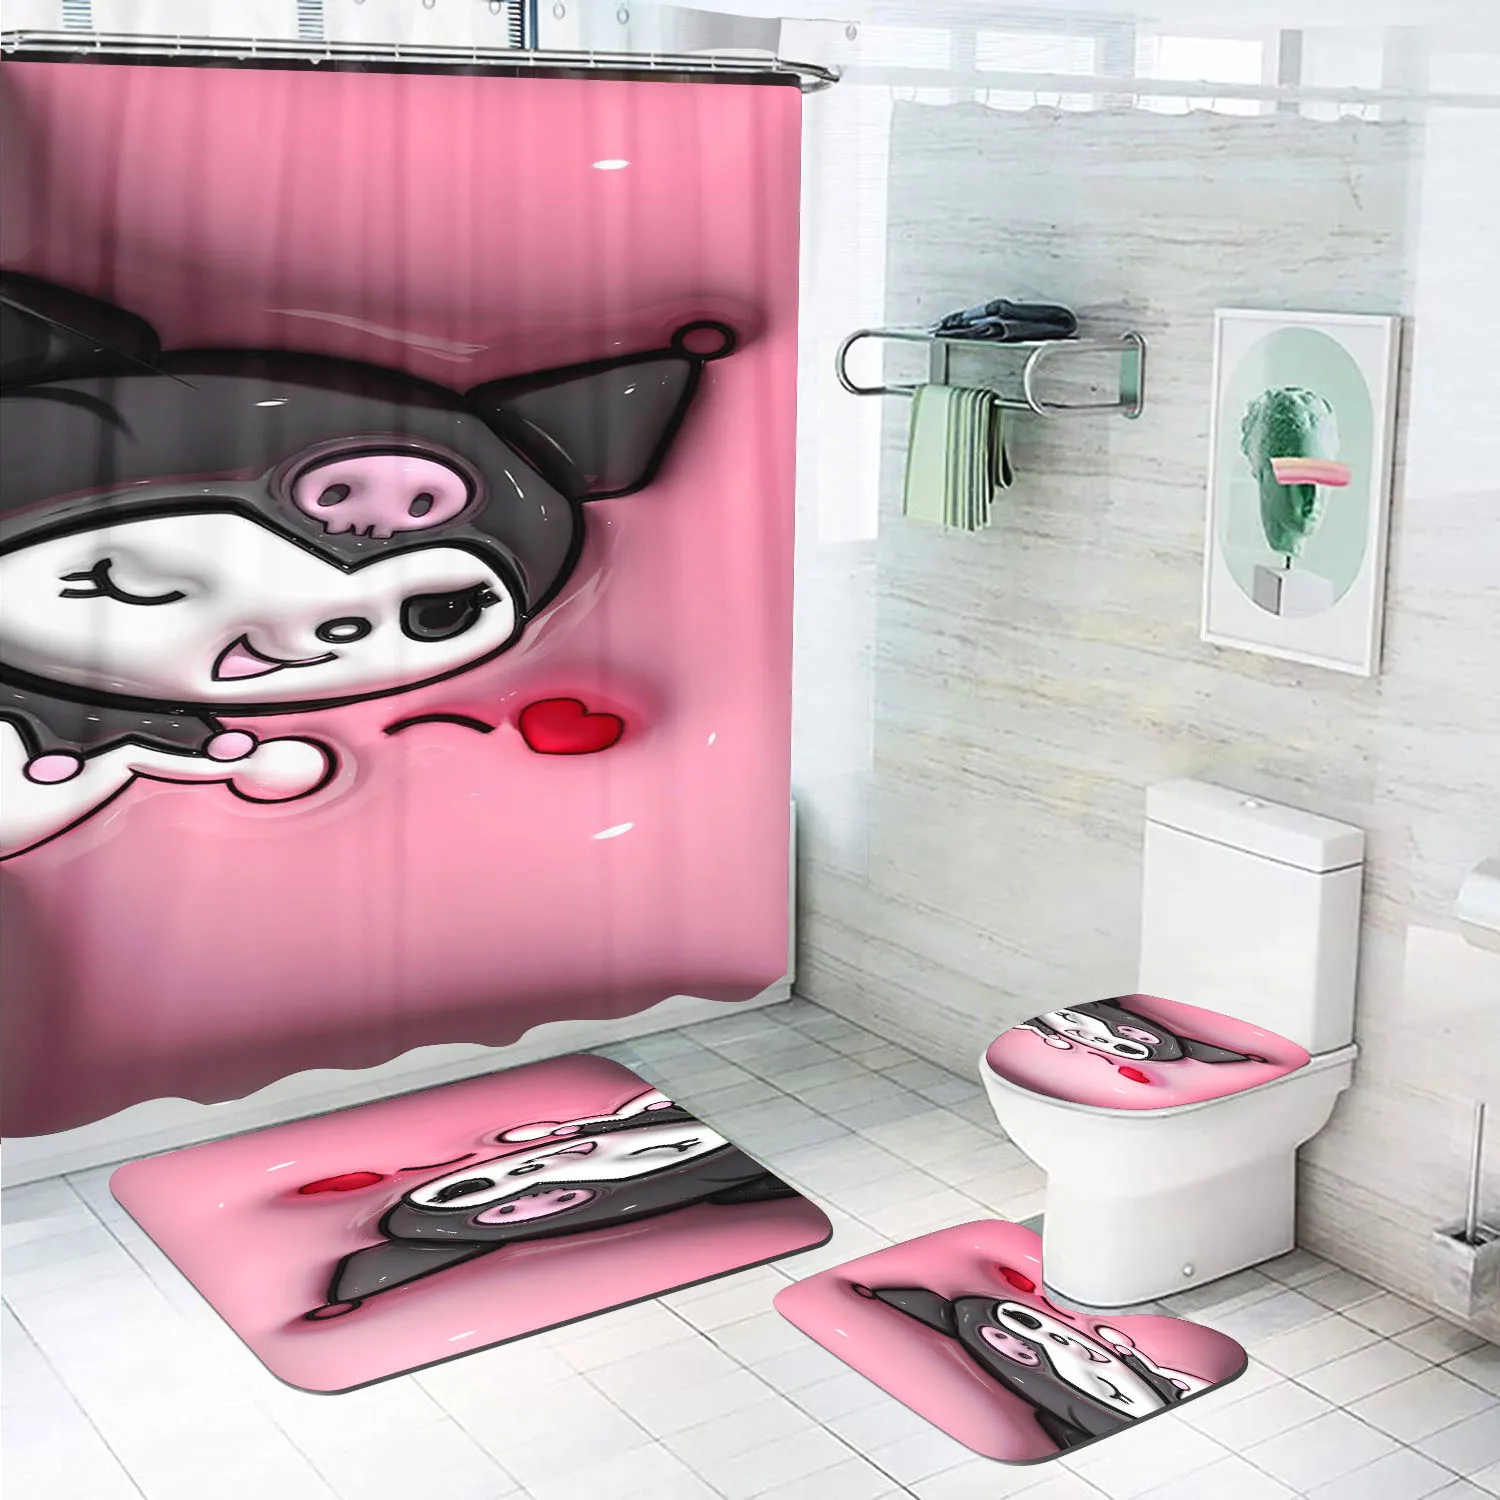 

Набор для ванной комнаты Kuromi из 4 предметов, коврики и шторы, домашний декор, мультяшный милый аниме